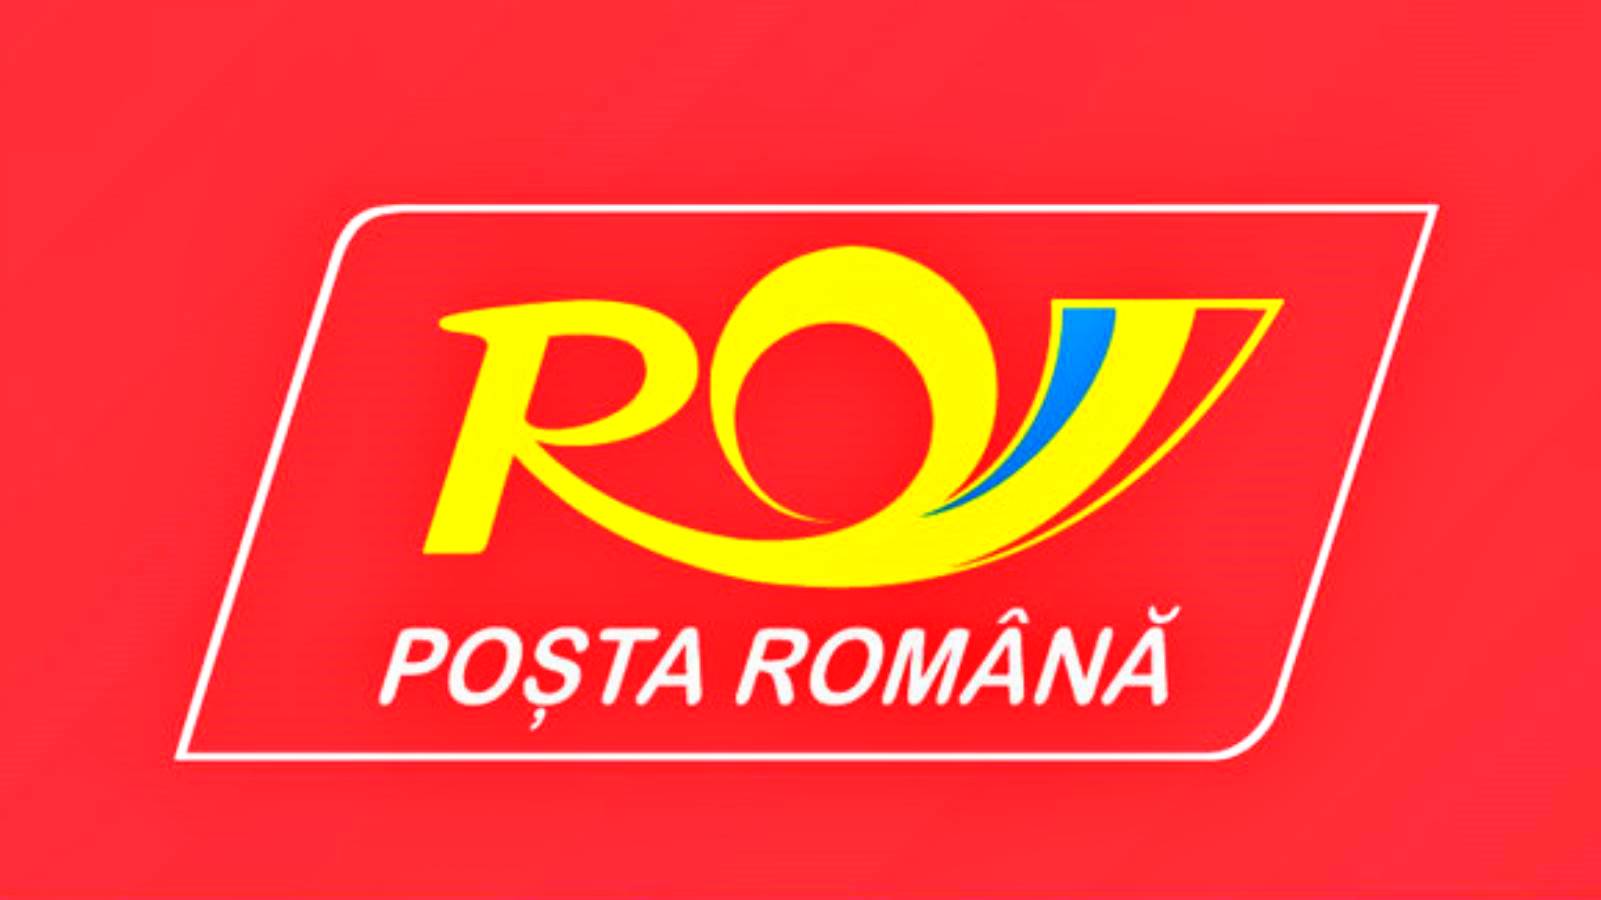 El Correo Rumano advierte a todos los rumanos ahora